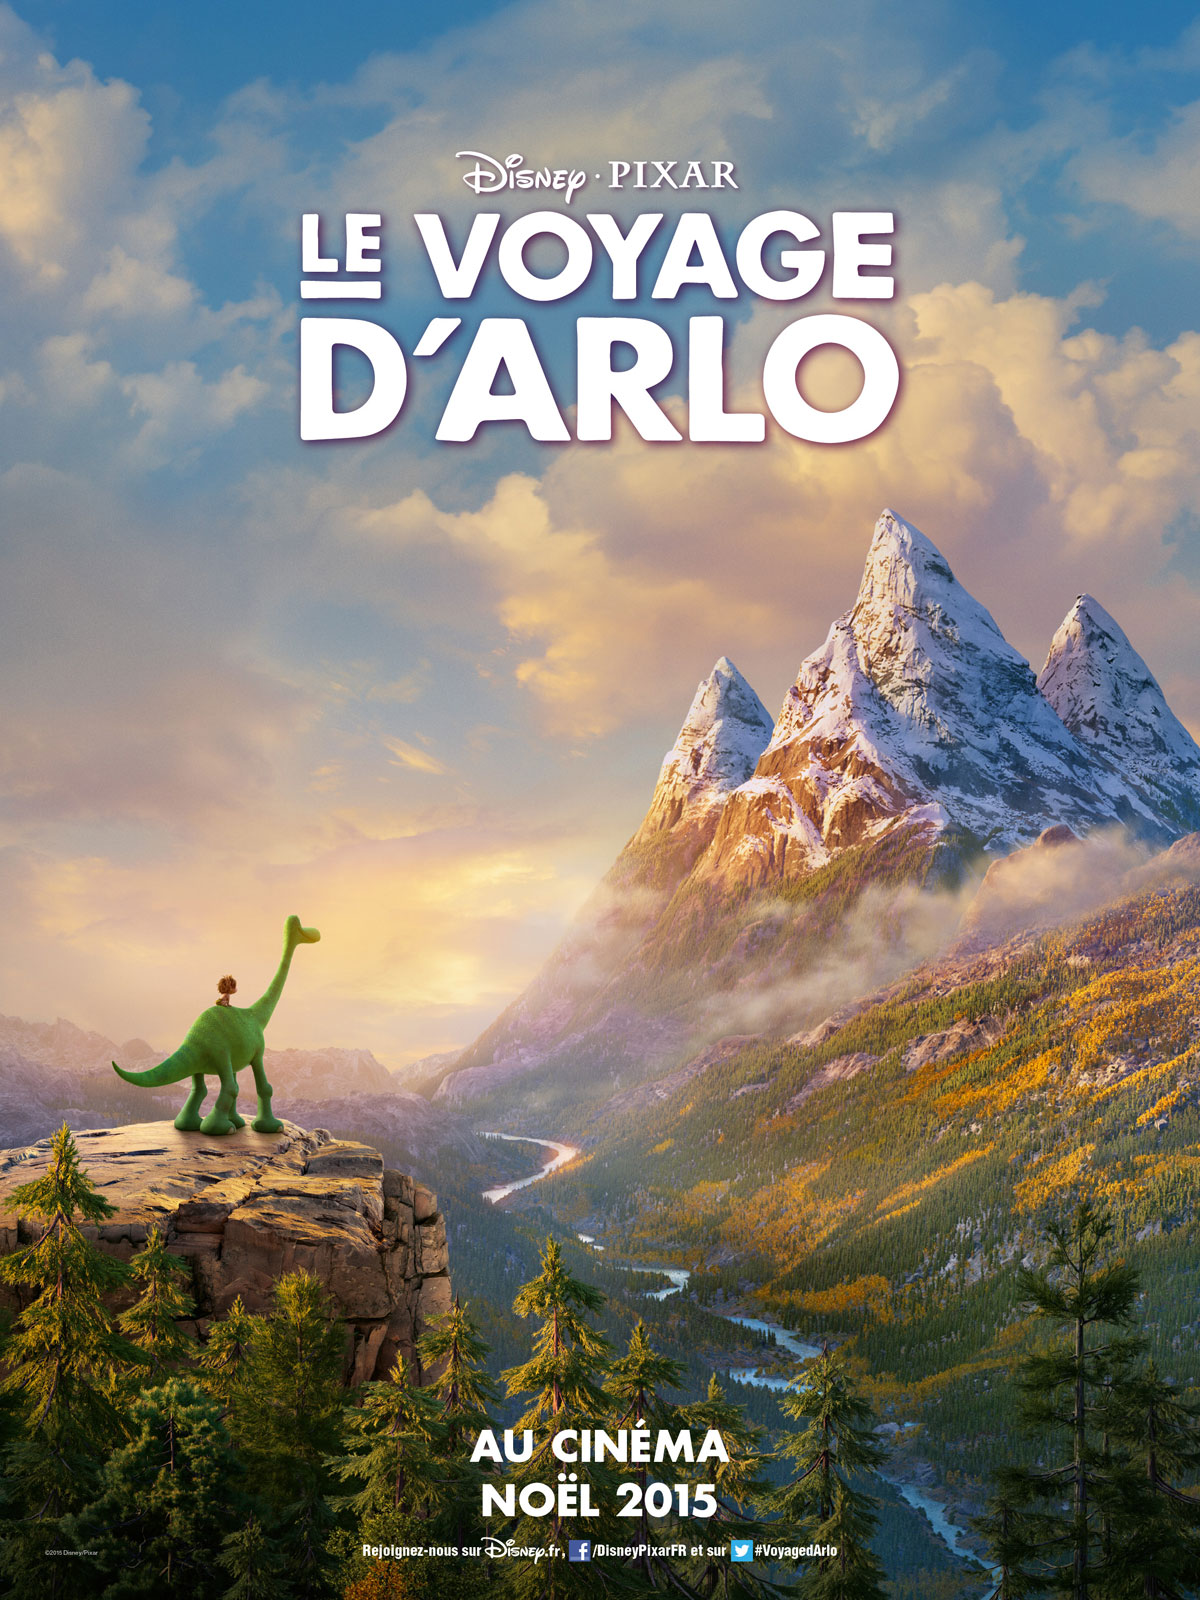 LeVoyageDarlo-Affiche-Pixar